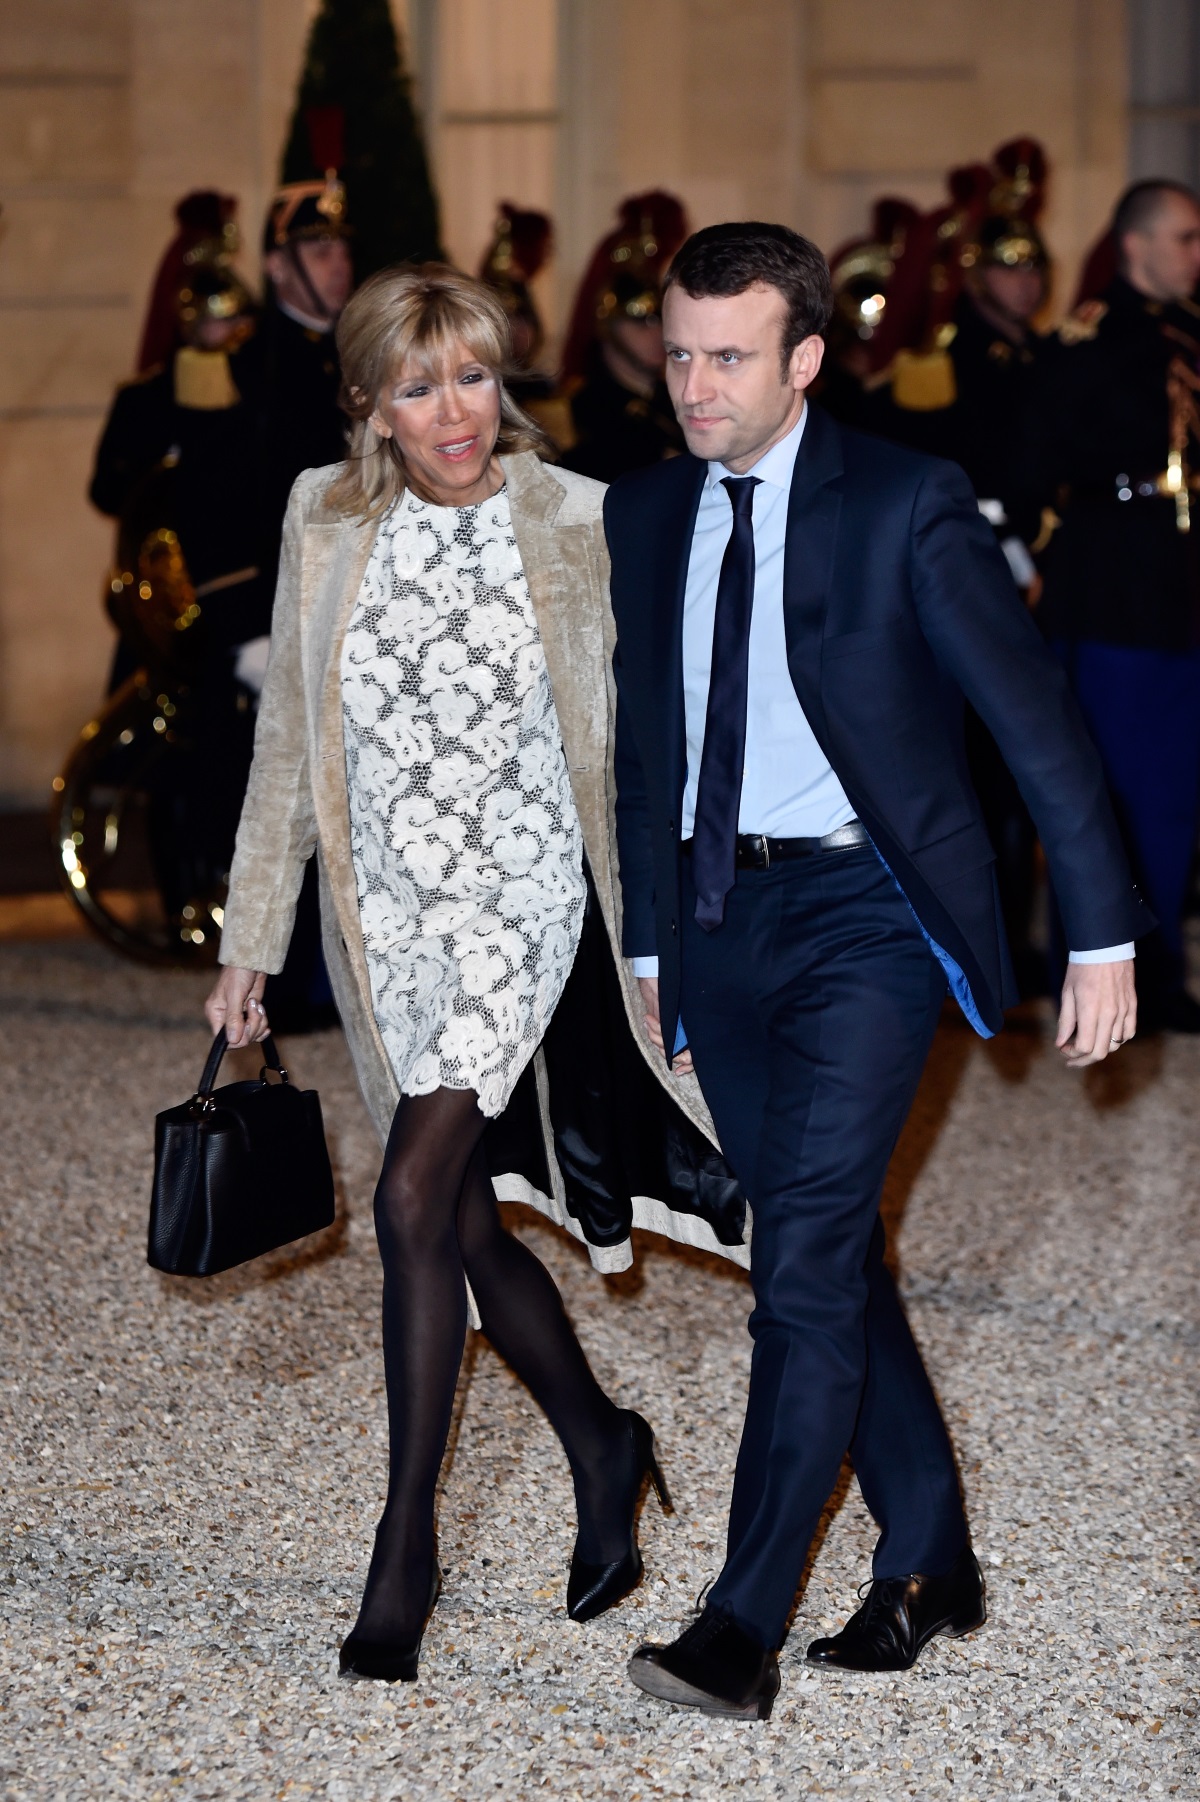 След като в неделя французите избраха за свой президент 39-годишният Еманюел Макрон, неговата съпруга 64-годишната Брижит Троньо-Макрон стана първата дама на Франция. И въпреки че в страната съпругата на президента няма съществени функции, Брижит влезе в световните медии заради необичайната любовна история със своя съпруг. Бившата учителка на Макрон се отличава със стил и елегантност. По време на кампанията тя показа голяма подкрепа към половинката си, а усмивката ѝ не слизаше от лицето. Вижте Брижит в нашата галерия.